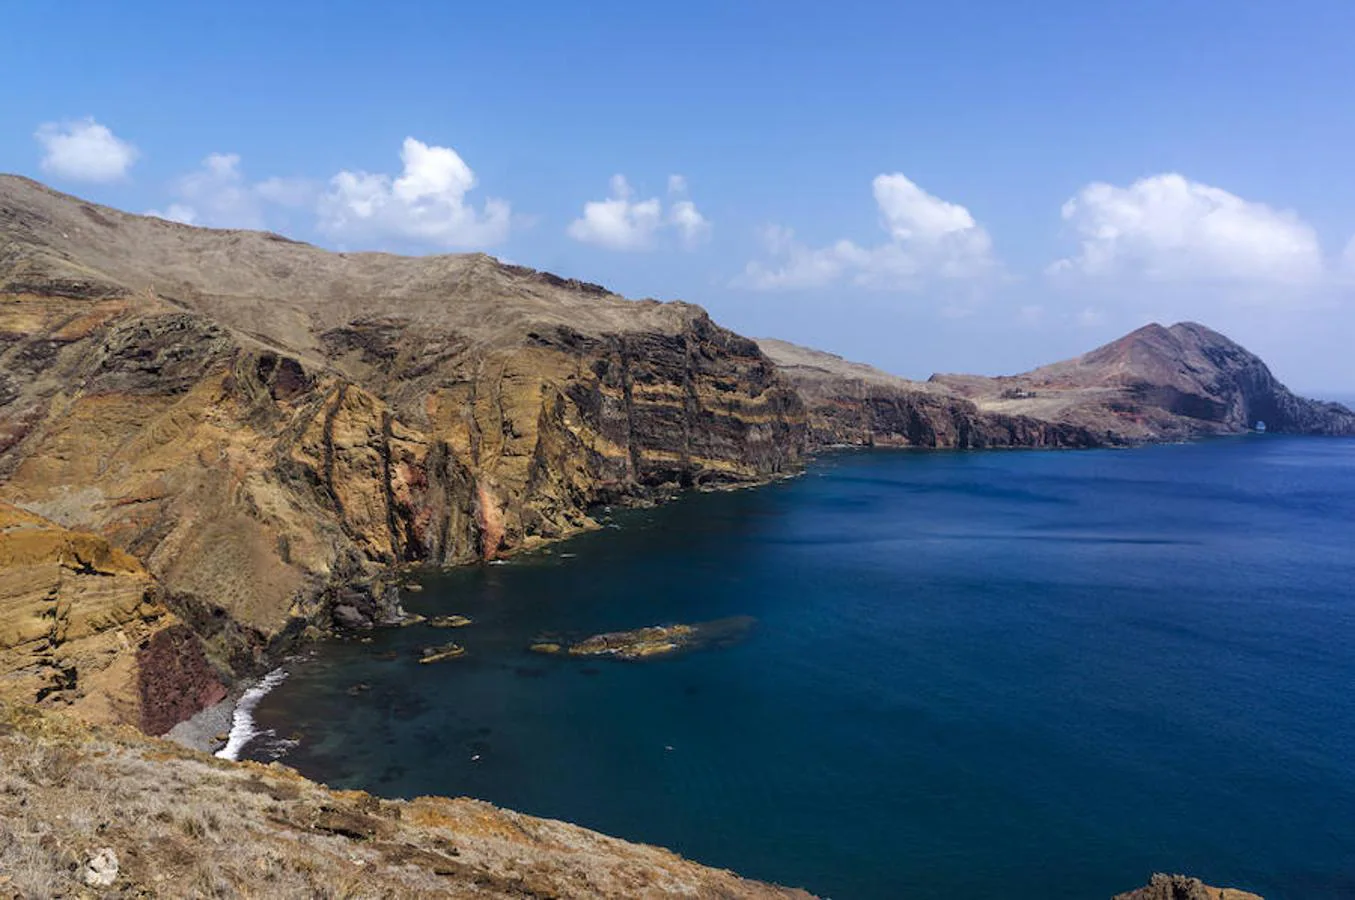 Imagen desde la Punta de San Lorenzo, una península del extremo este de la isla de Madeira